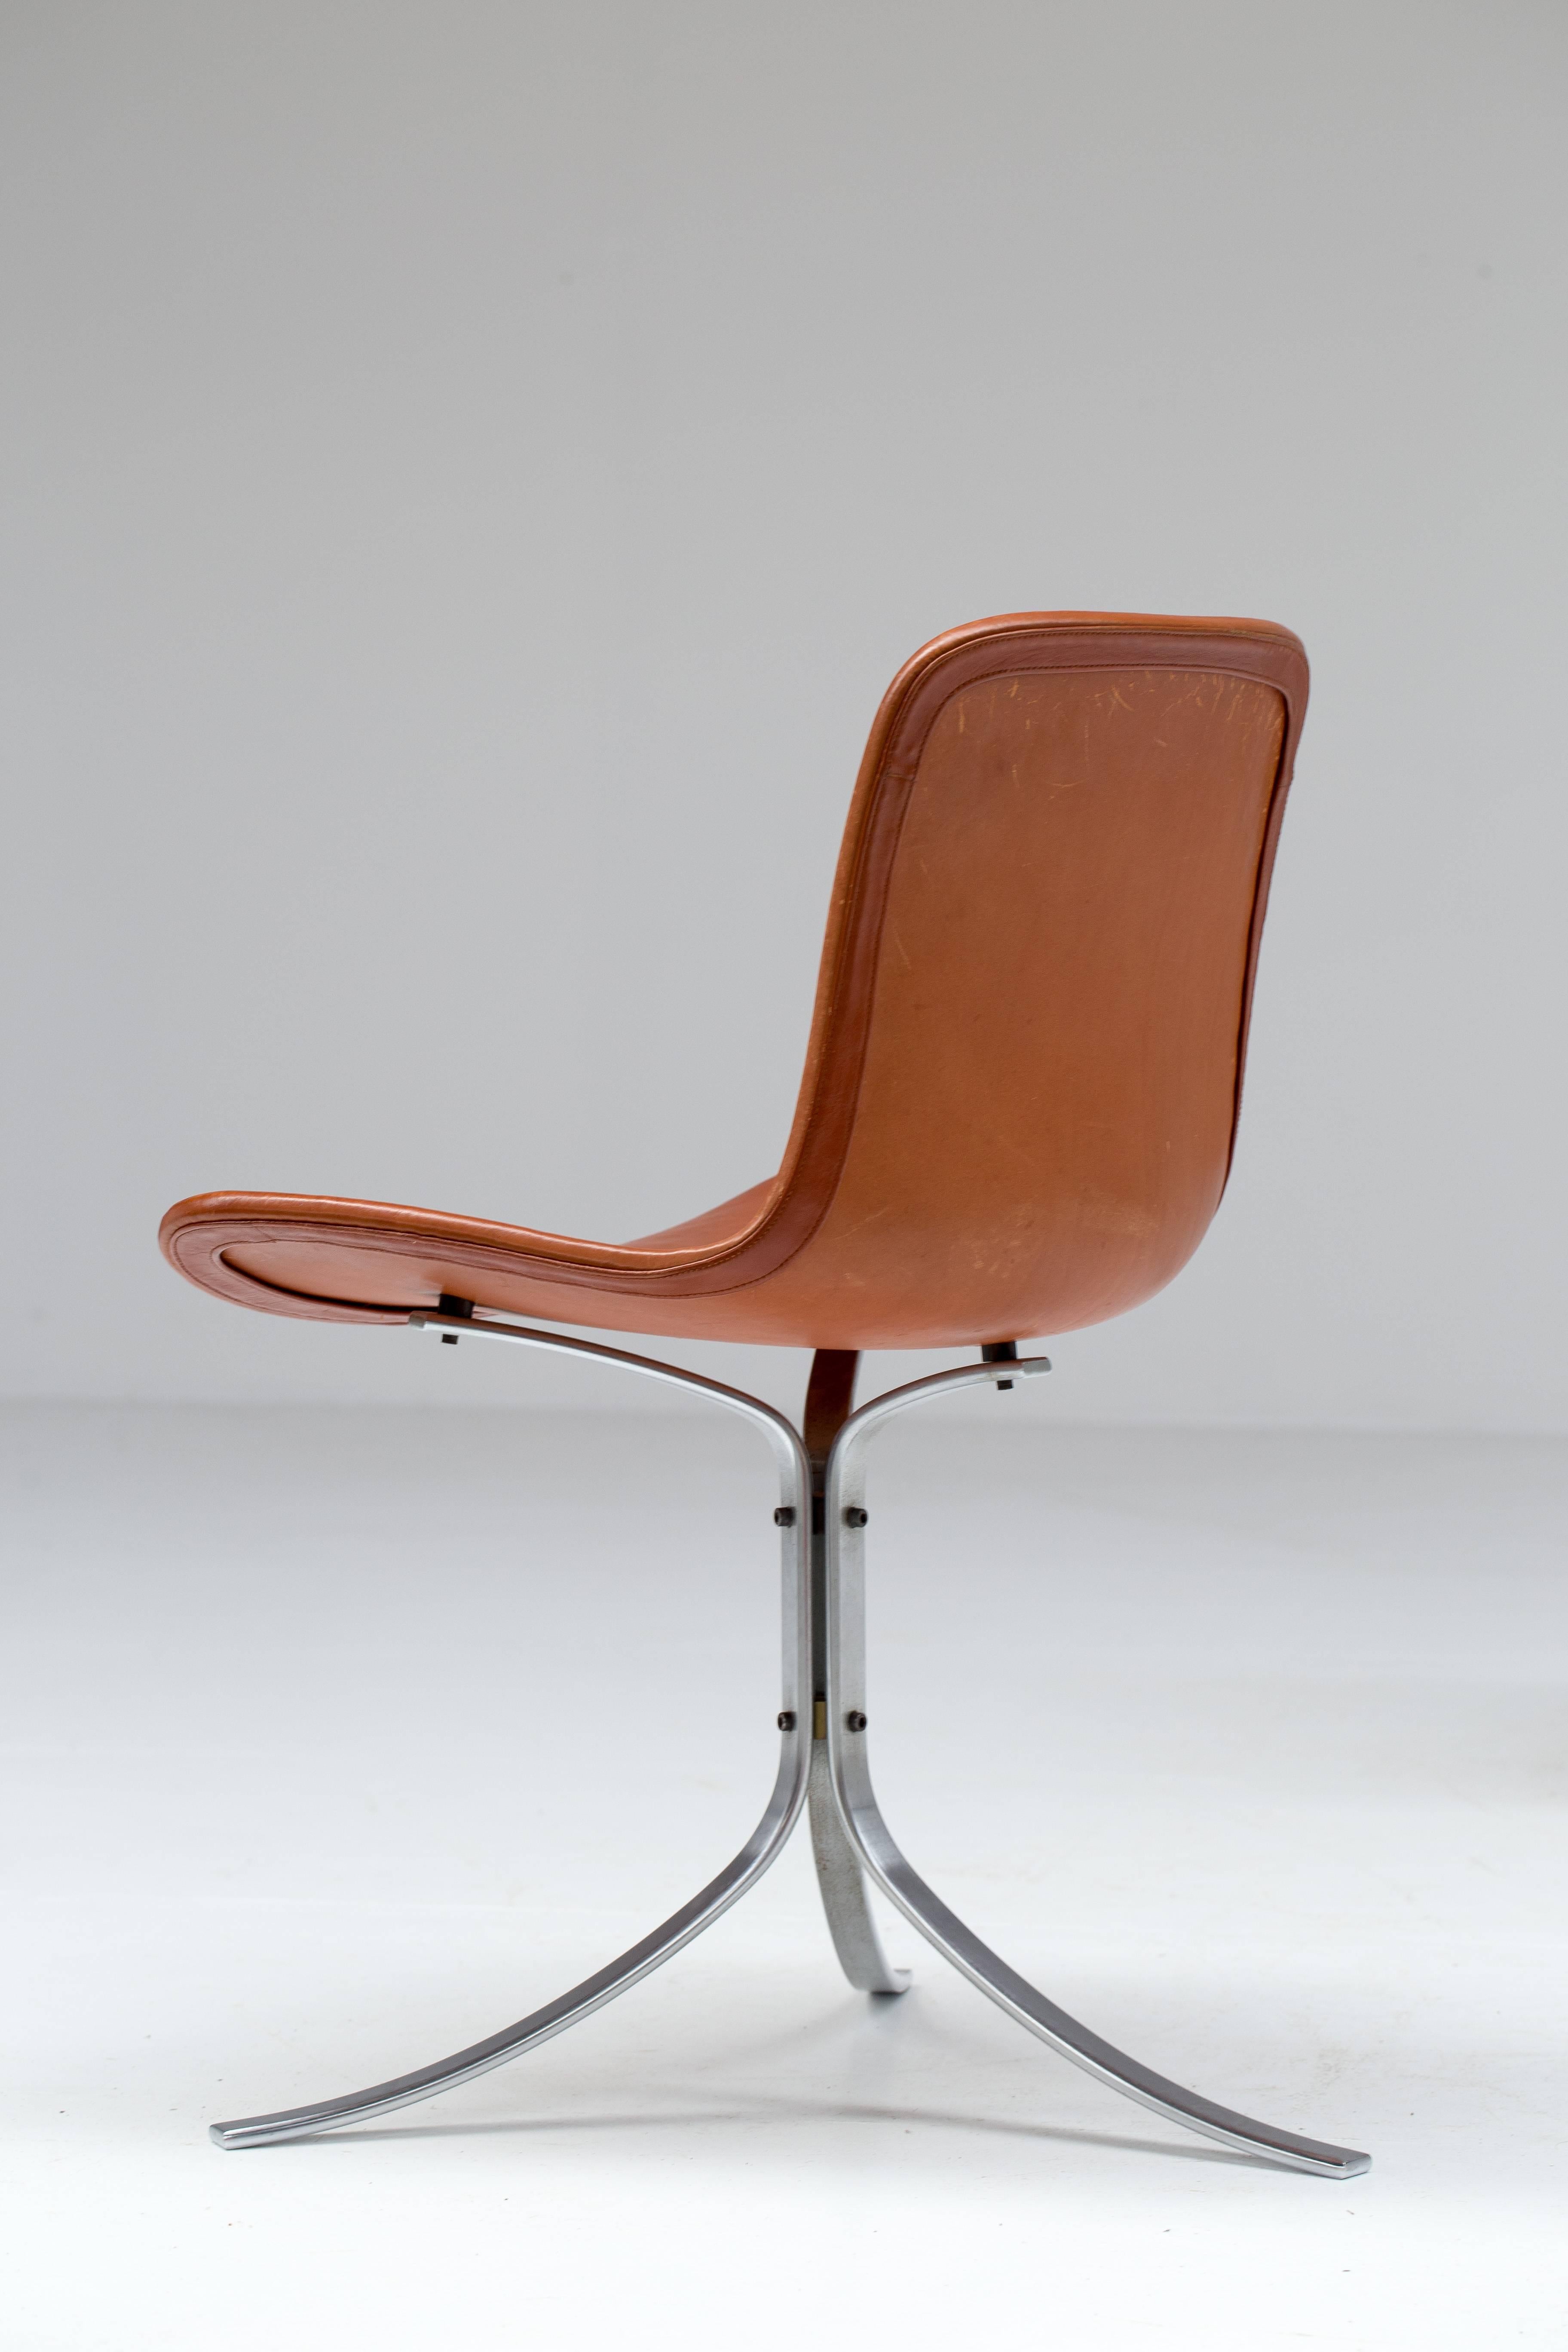 PK9 Chairs by Poul Kjaerholm for E. Kold Christensen 1